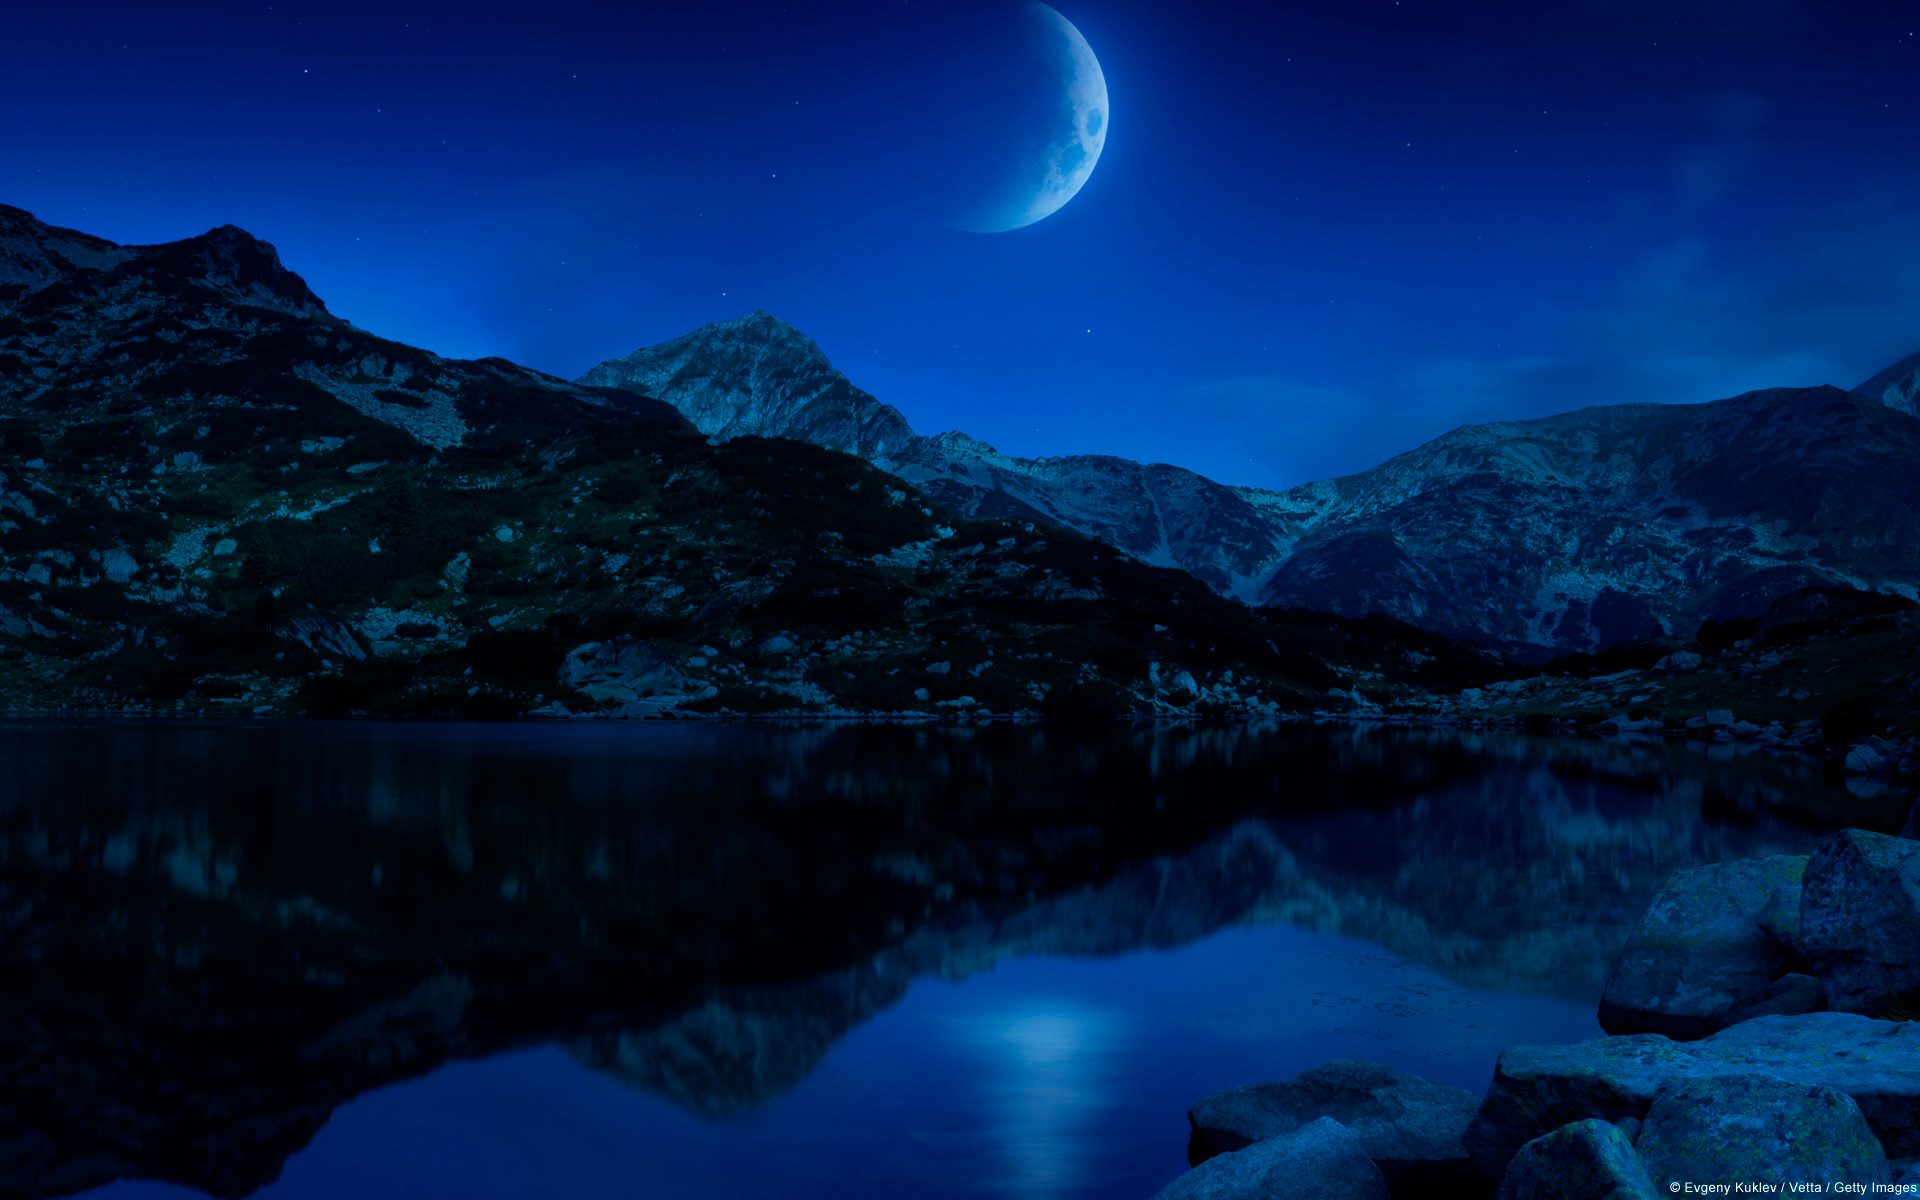 523843 免費下載壁紙 摄影, 景致, 新月, 奇幻, 湖泊, 月亮, 山, 夜晚, 倒影, 天空 屏保和圖片